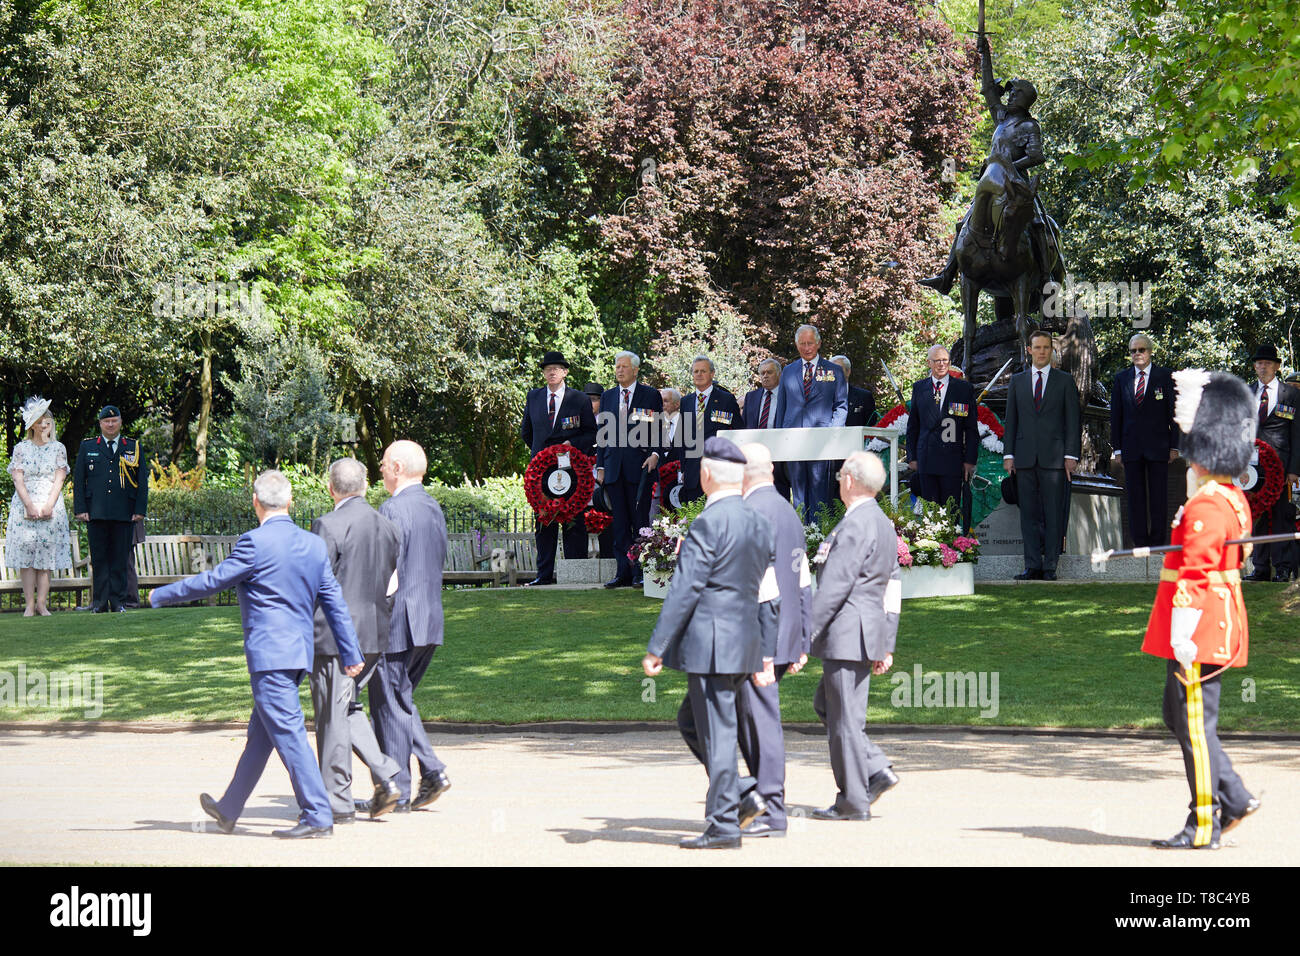 Londres, Royaume-Uni - 12 mai 2019 : Son Altesse Royale le Prince de Galles inspecte les cavaliers passés et présents dans le cadre de la 94e parade annuelle de l'Association anciens camarades de cavalerie dans Hyde Park. Banque D'Images